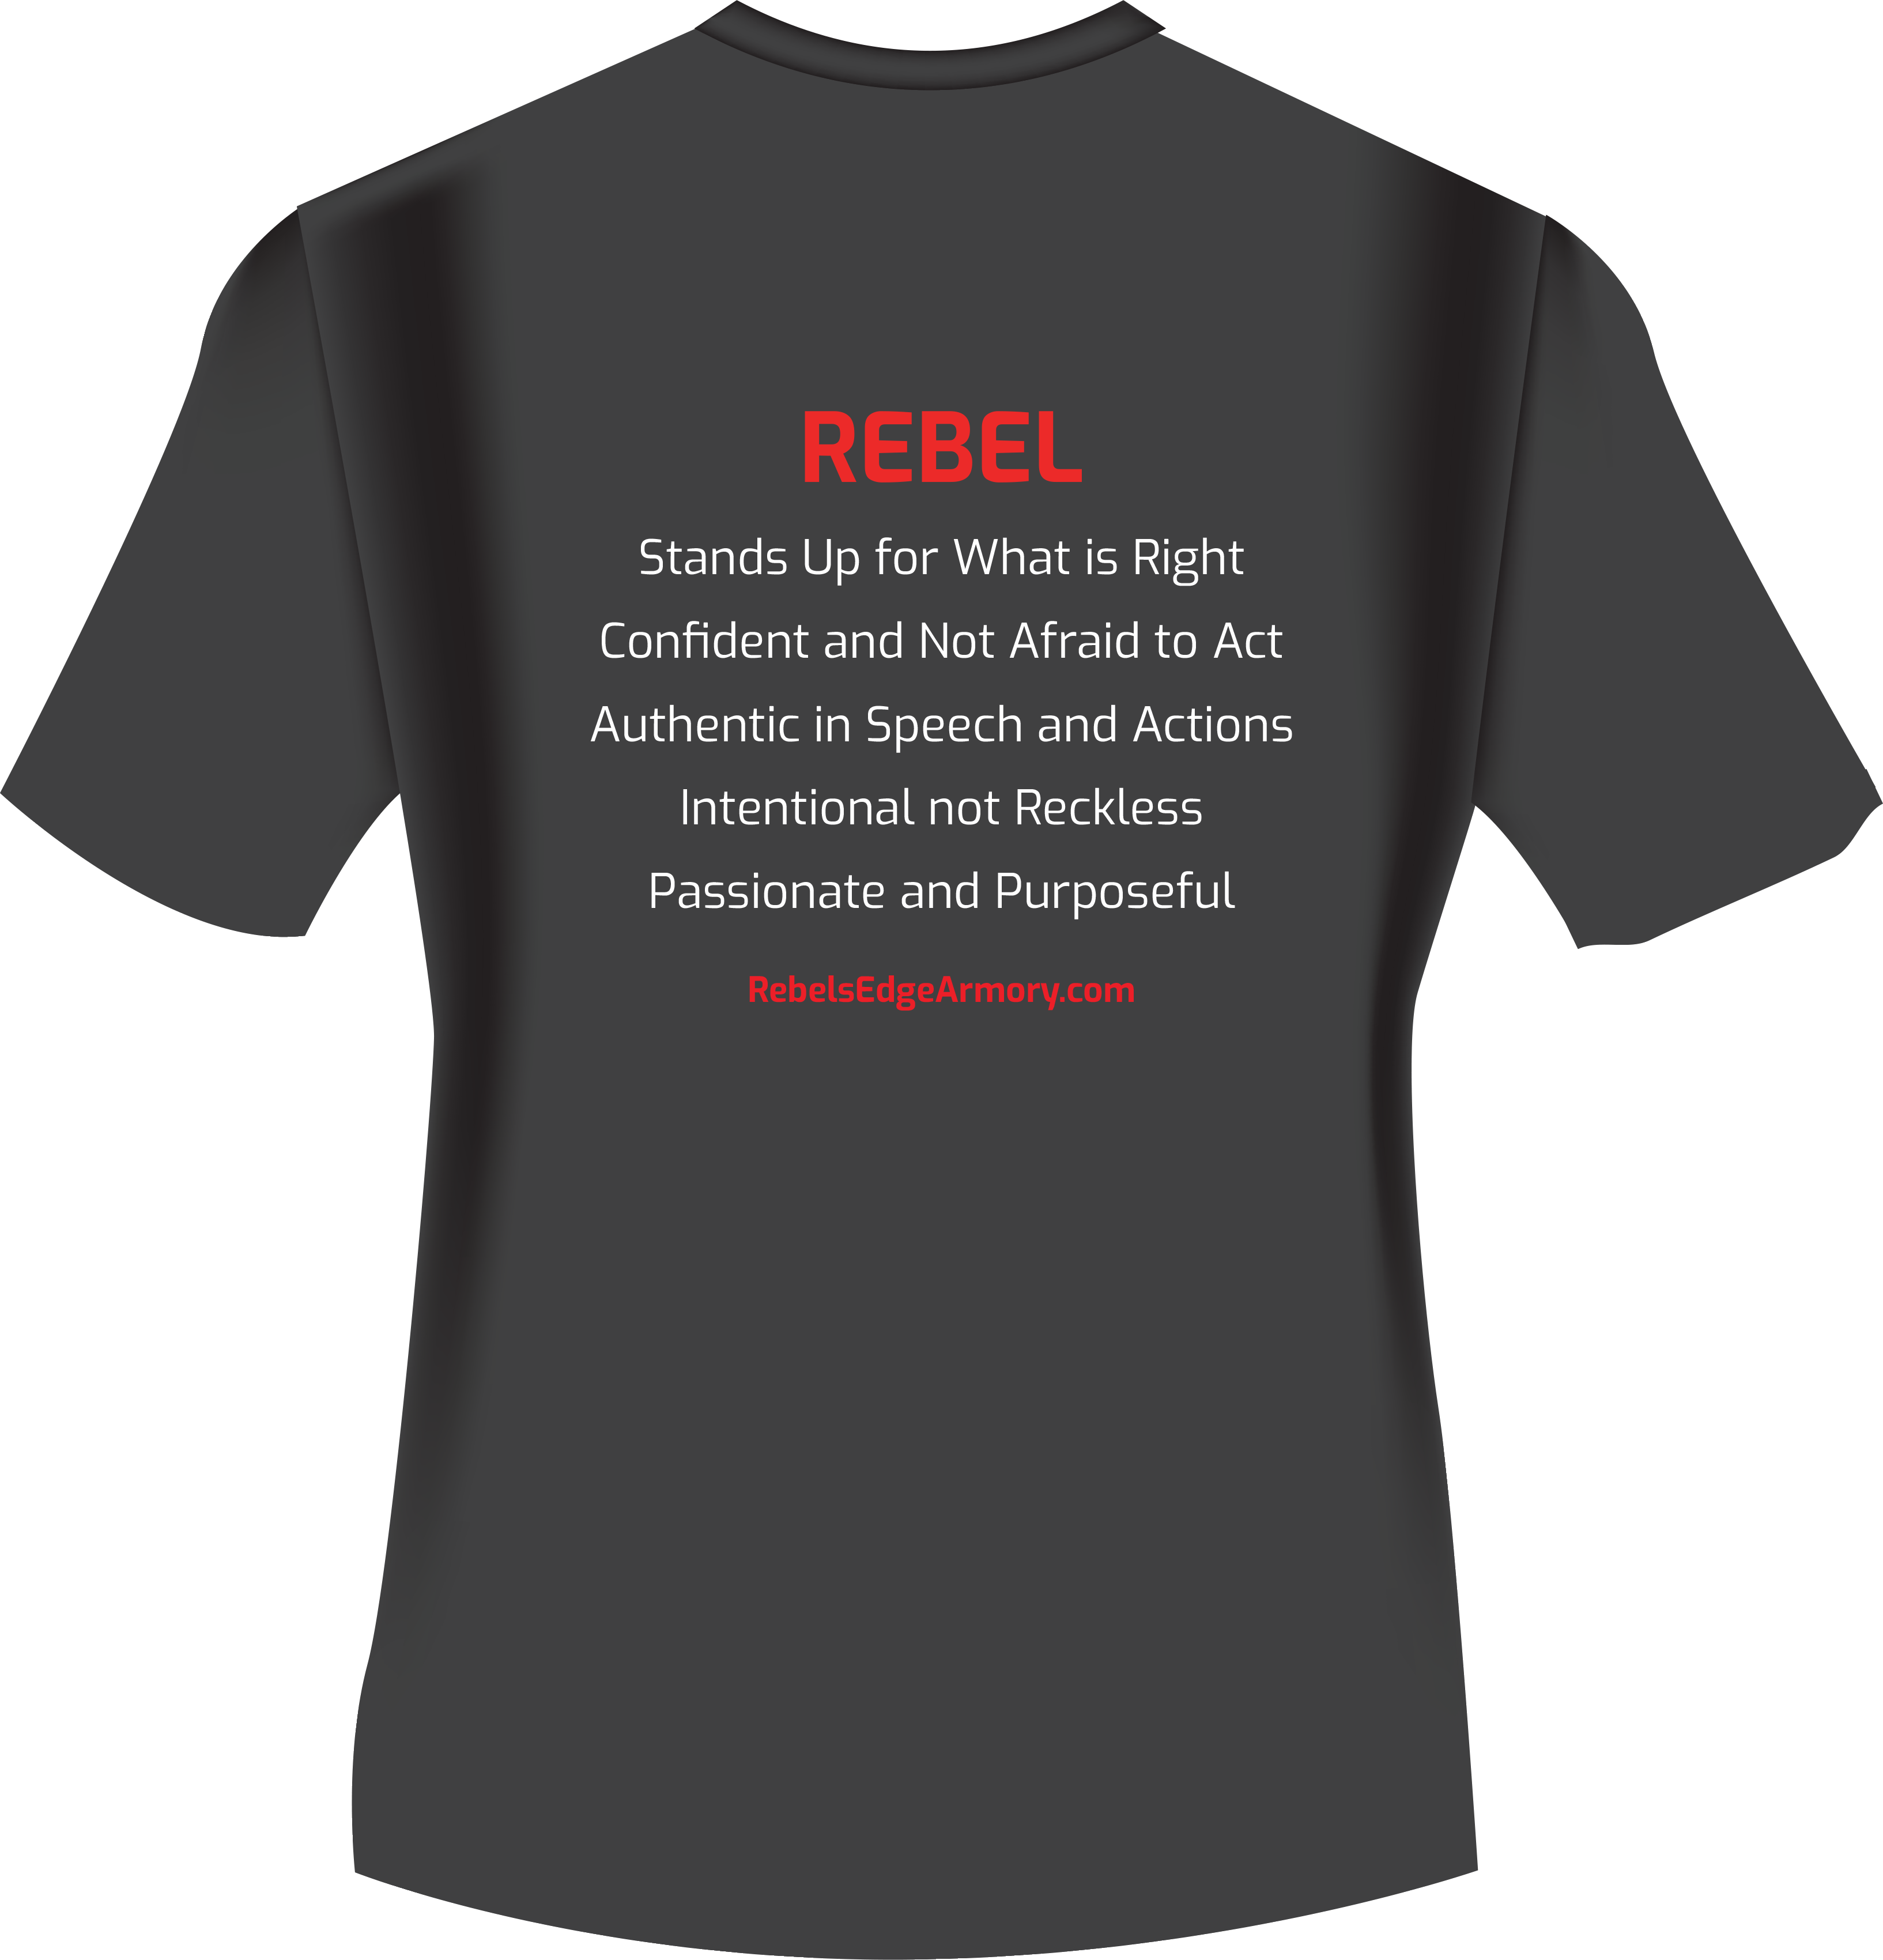 rebel definition